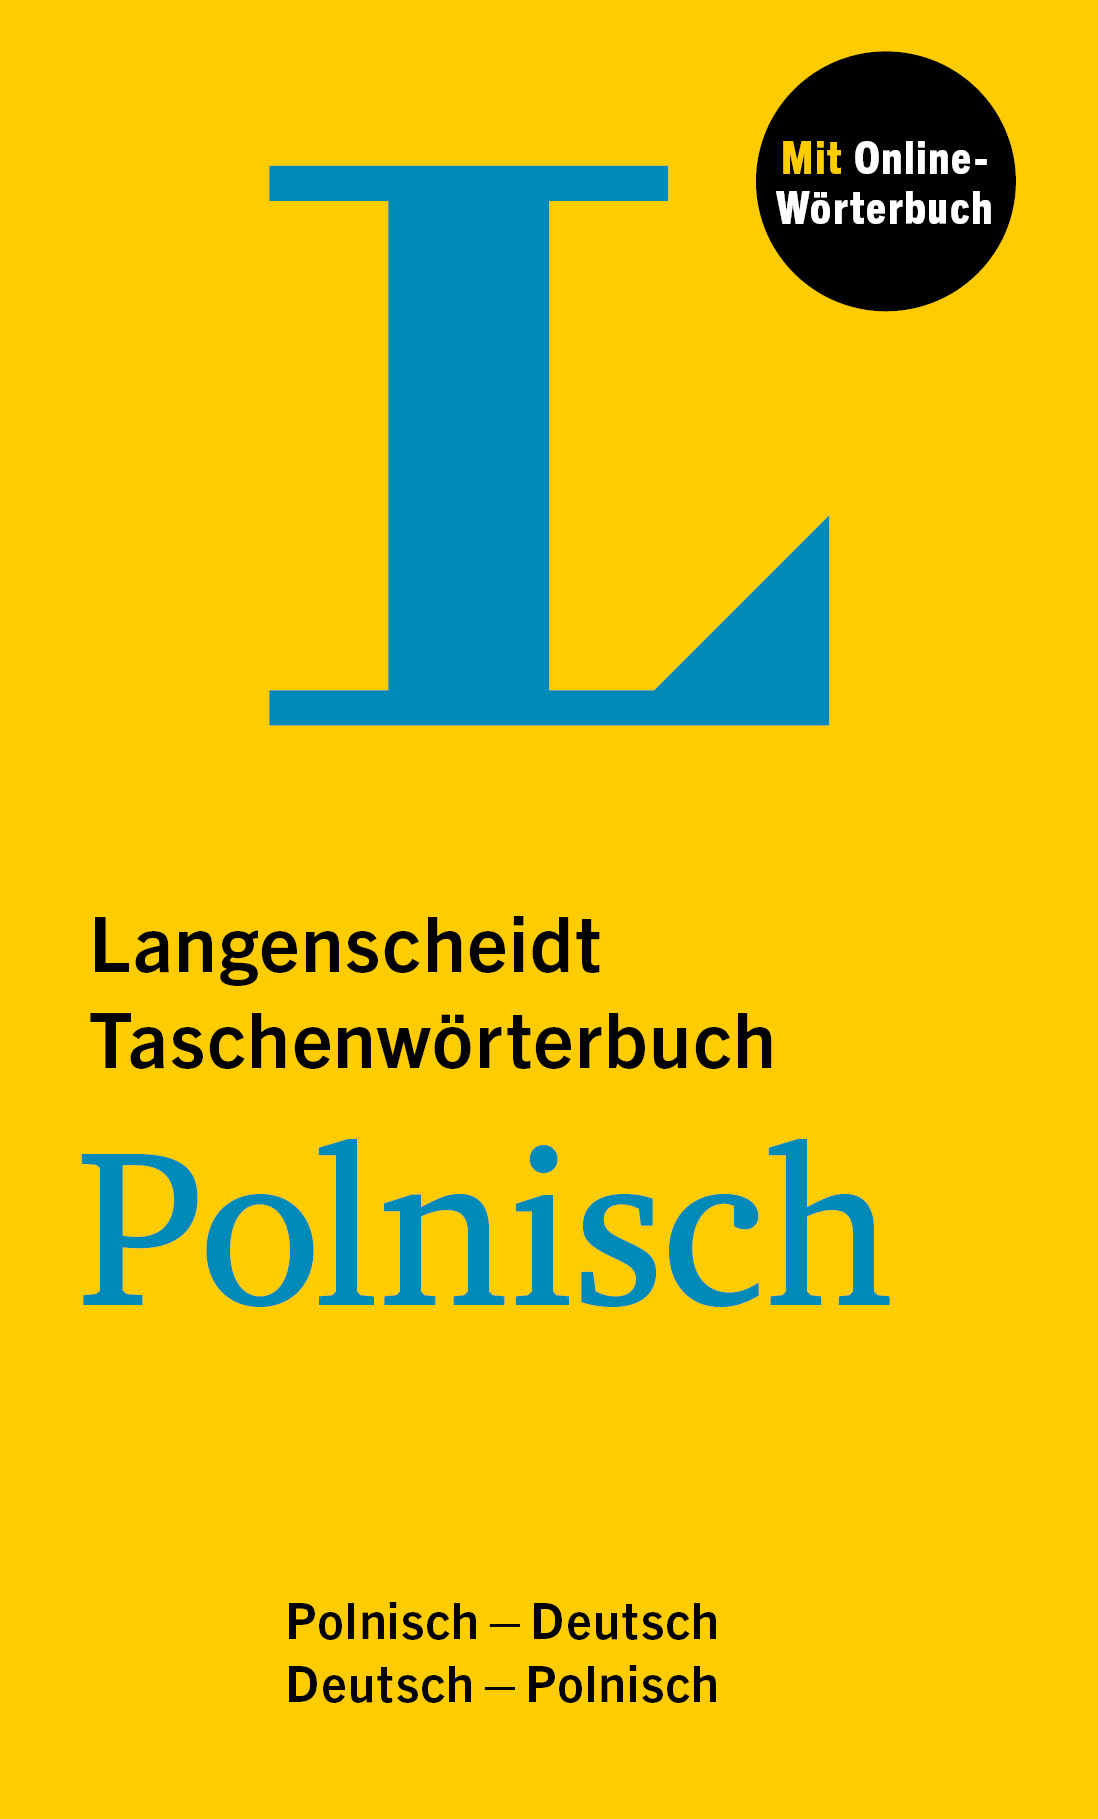 Langenscheidt Taschenwörterbuch Polnisch